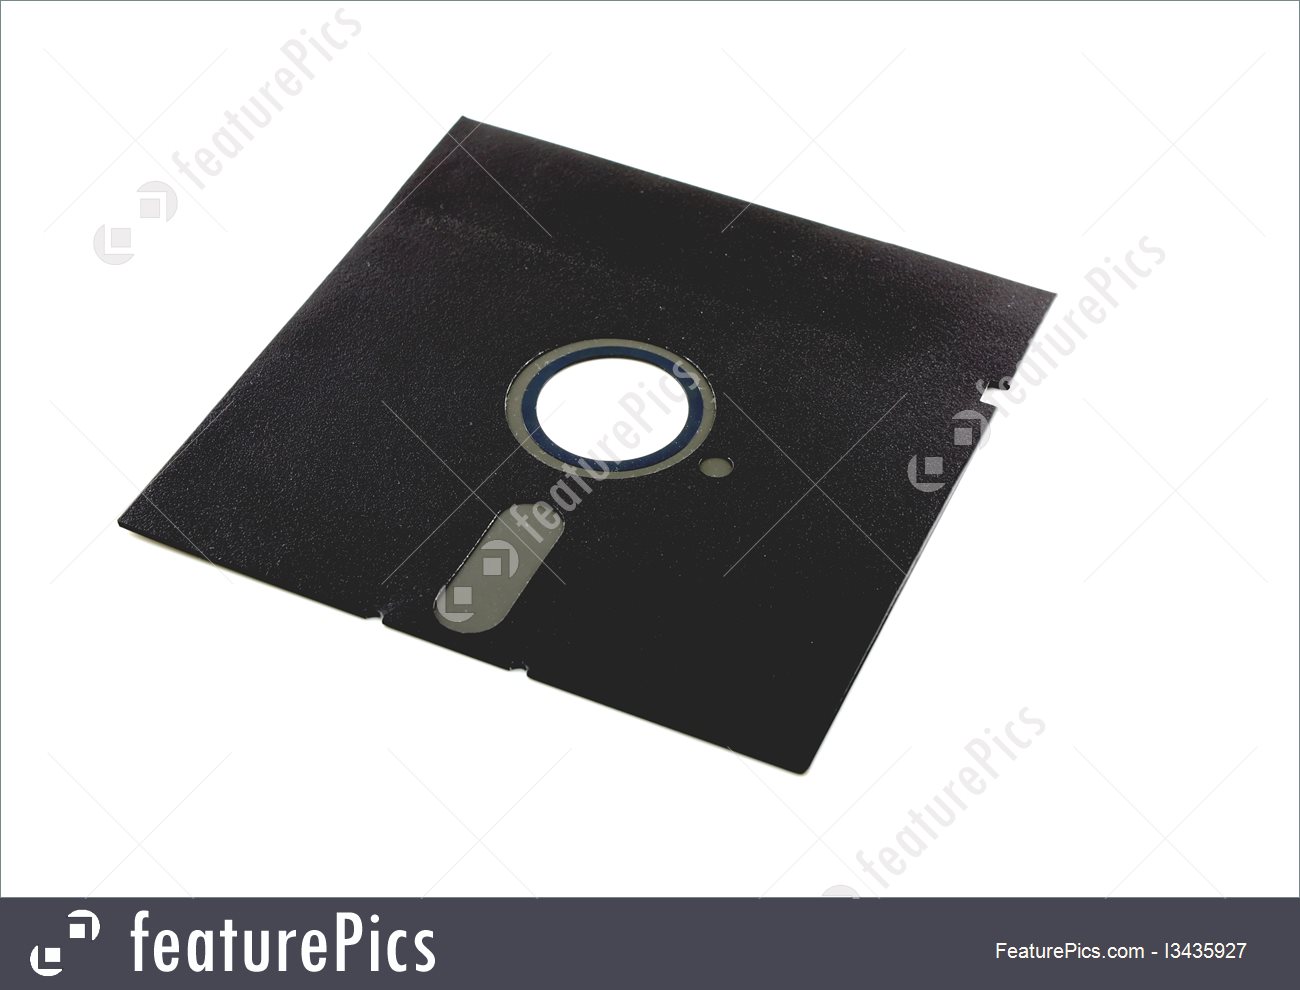 floppy disk image